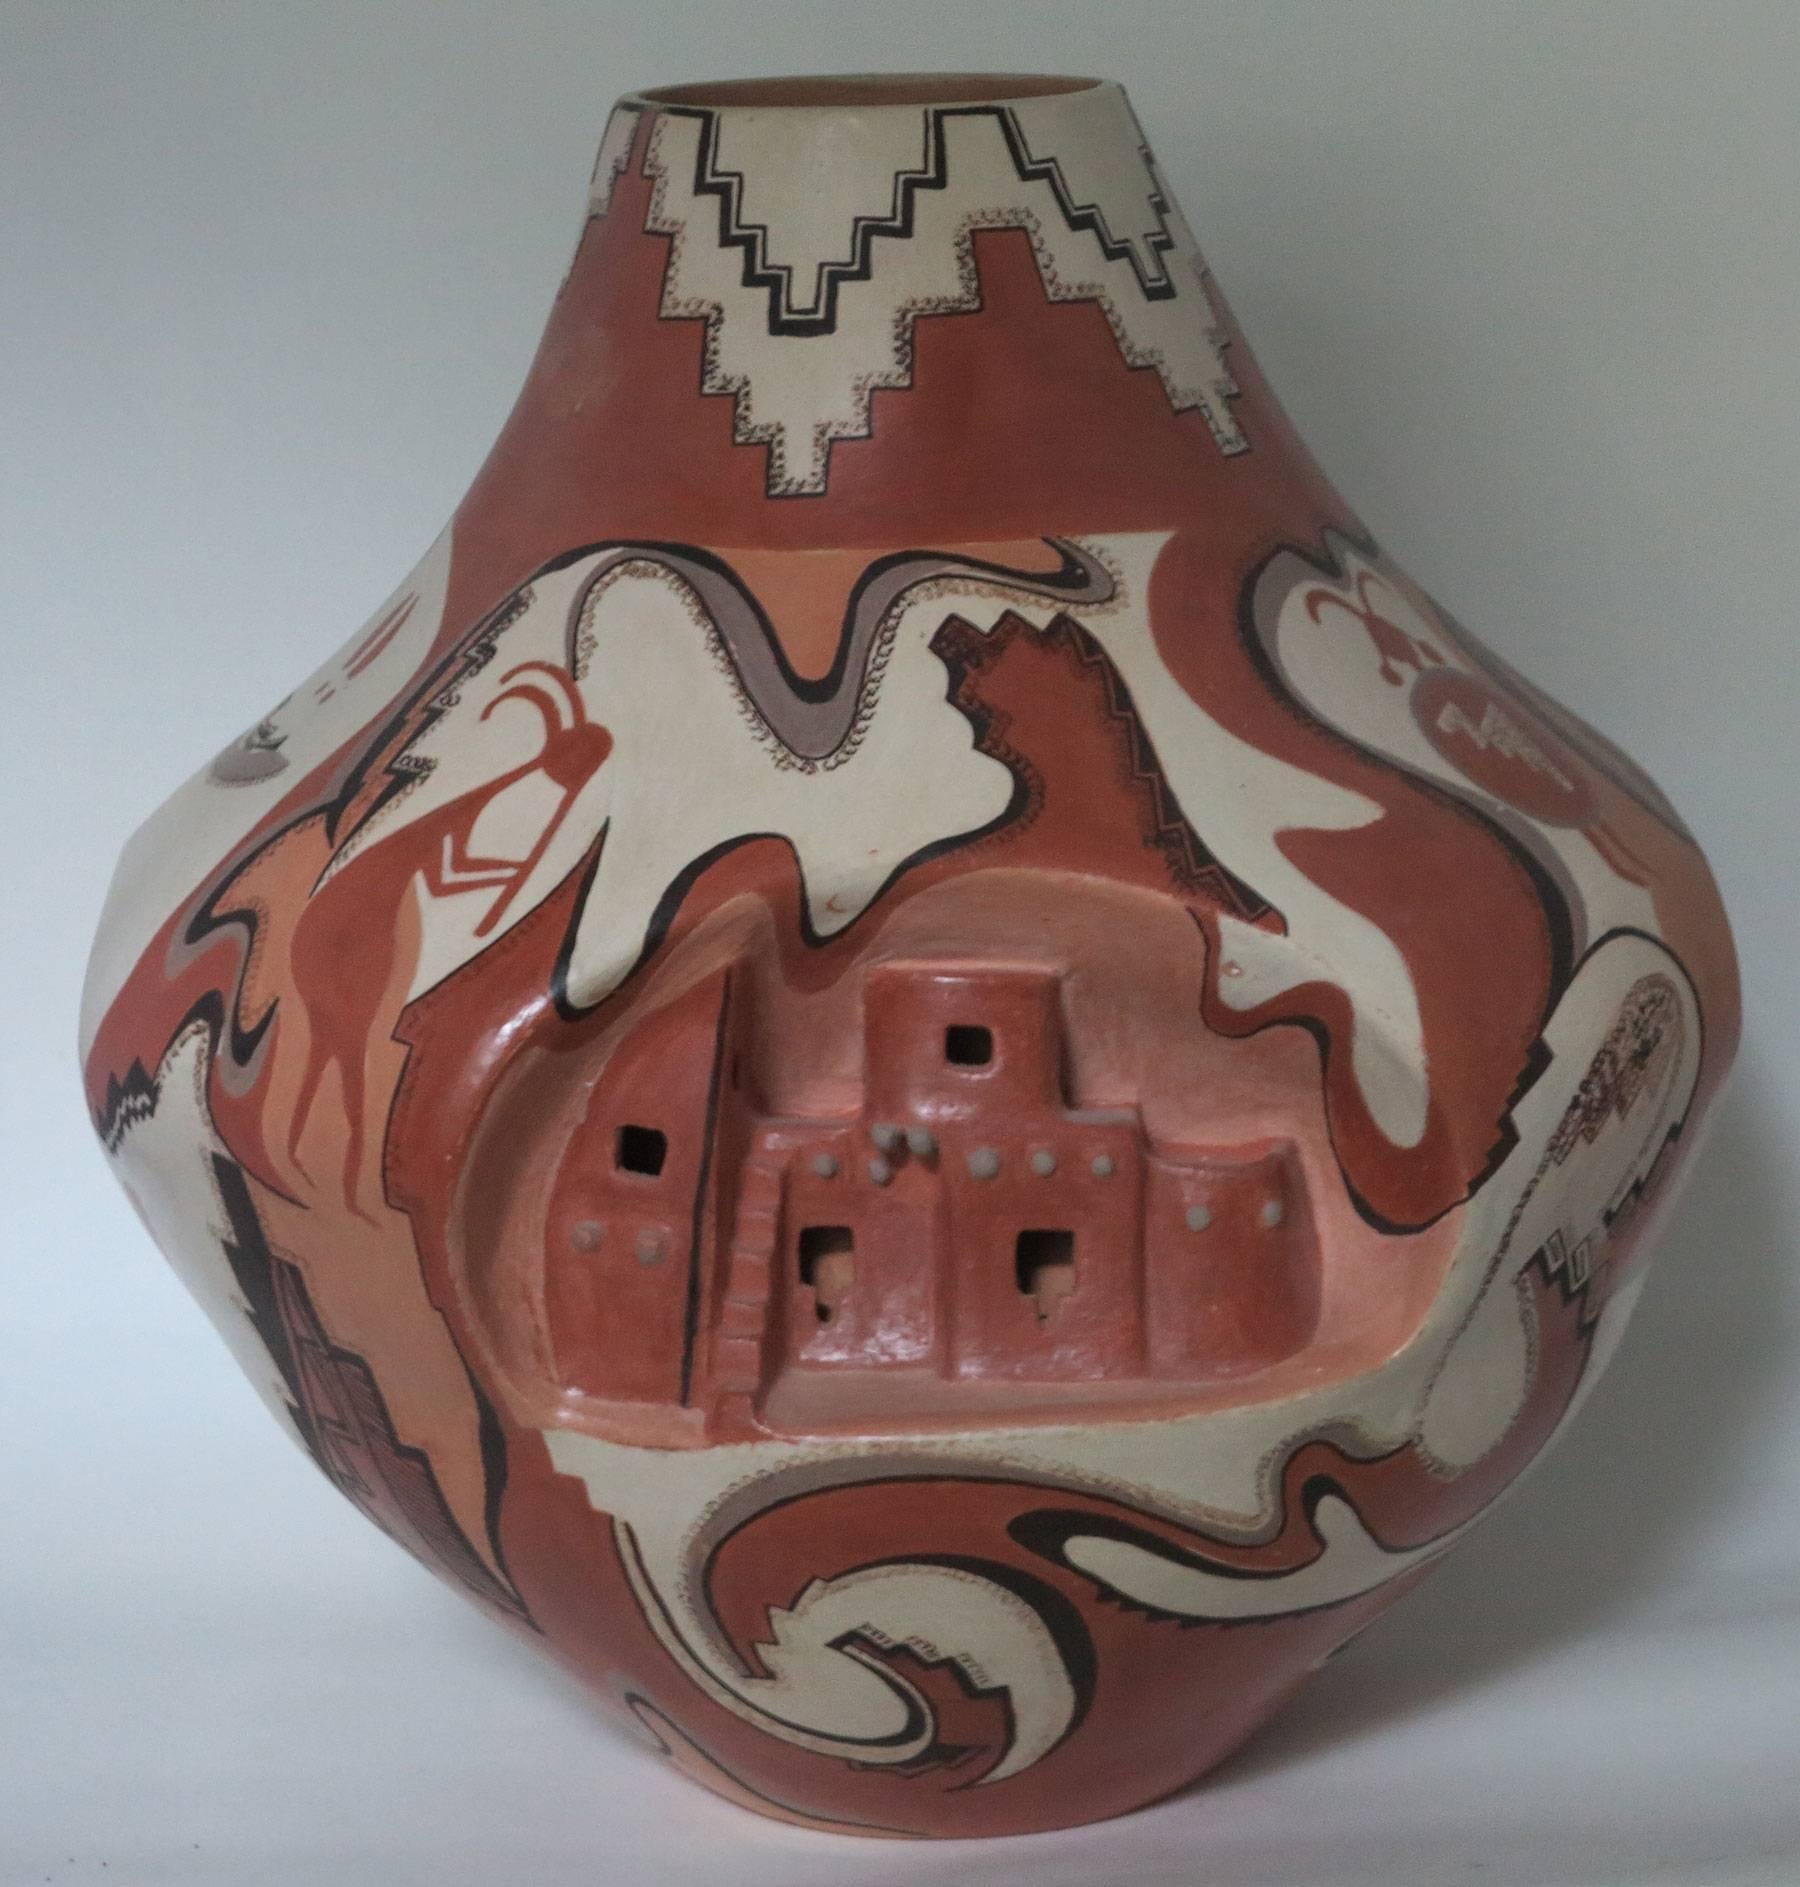 Grand et important vase en poterie de l'artiste amérindienne Lucy Leuppe McKelvey. Magnifiquement exécuté, il représente les habitations traditionnelles des falaises et d'autres symboles anciens des tribus amérindiennes. Mesures : Environ 13 pouces